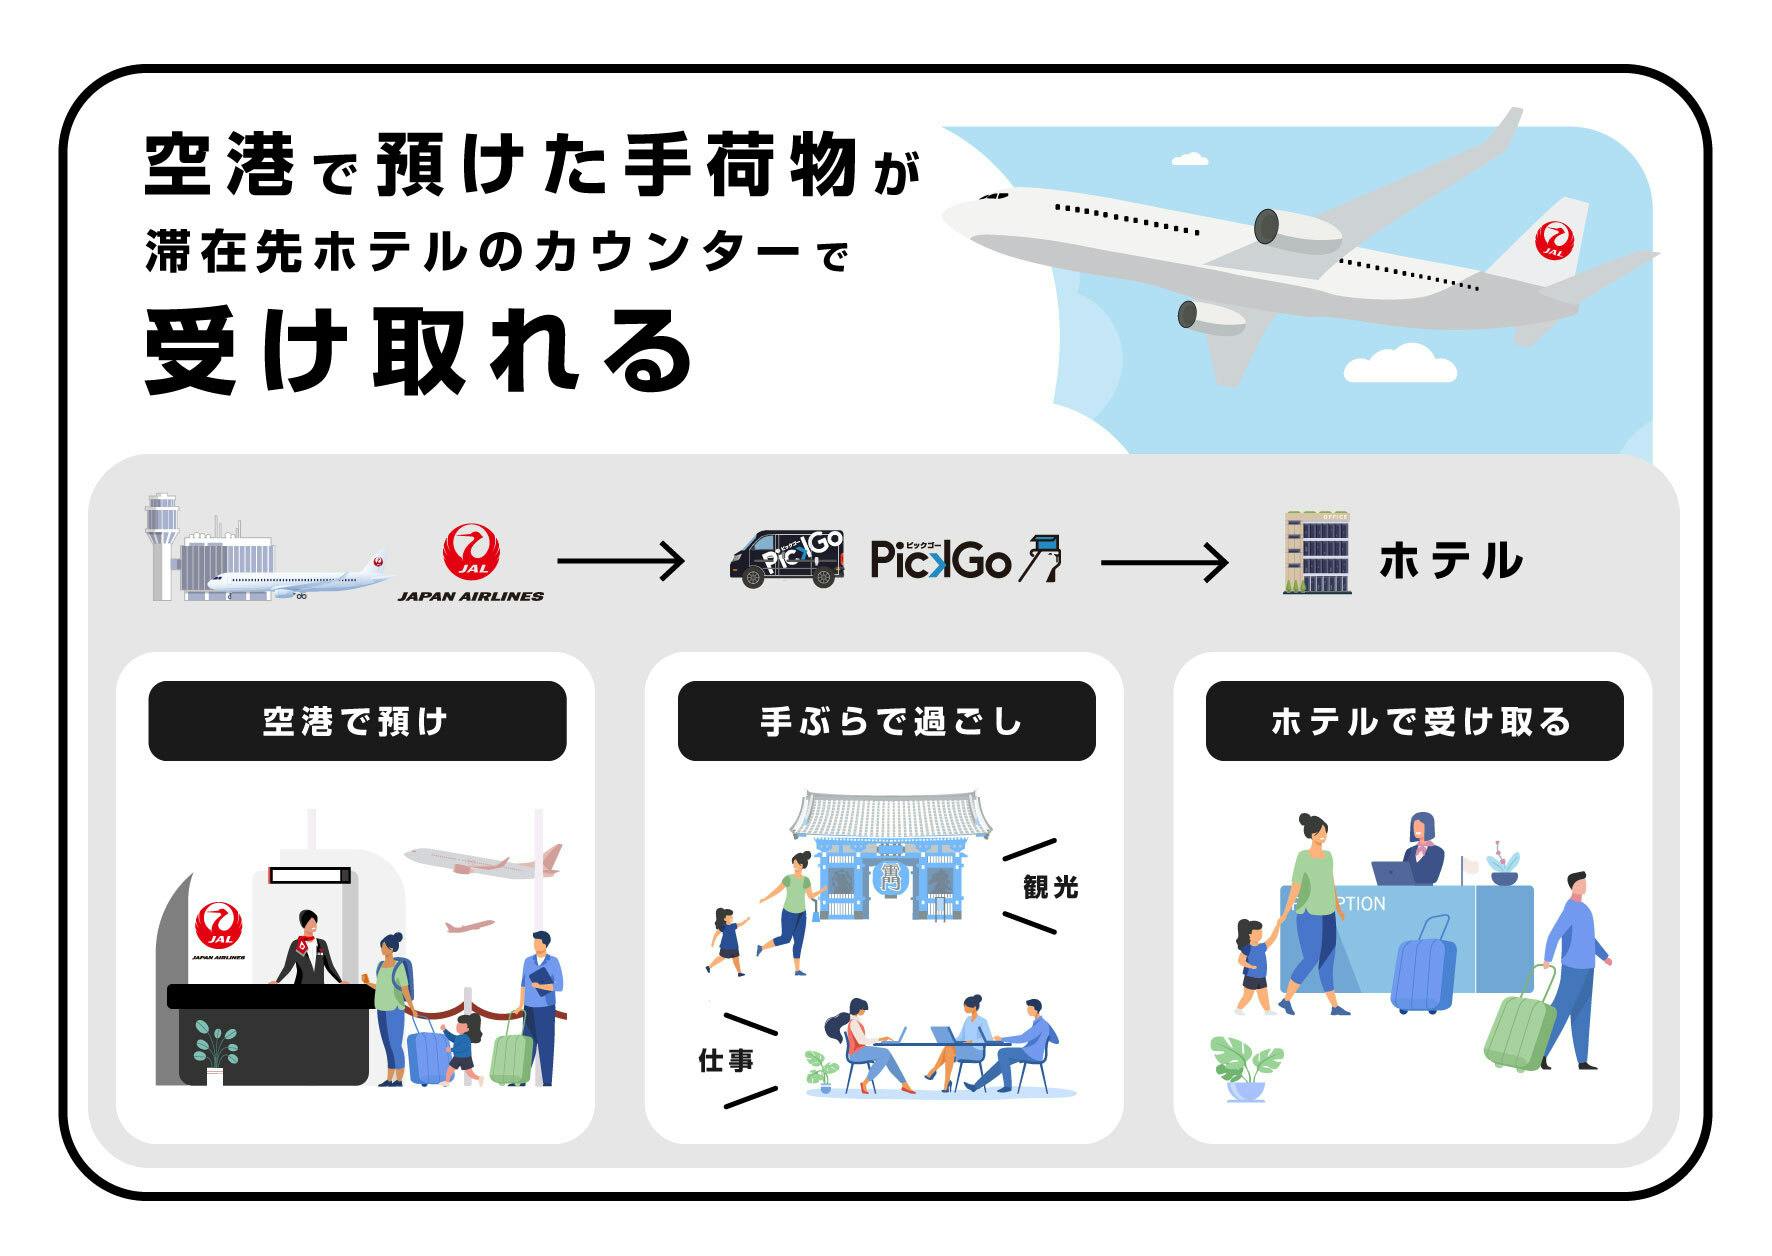 東京 羽田 行きの便で 滞在先ホテルまで手ぶらで移動できる手荷物当日配送サービスの実証実験を実施 Cbcloud株式会社